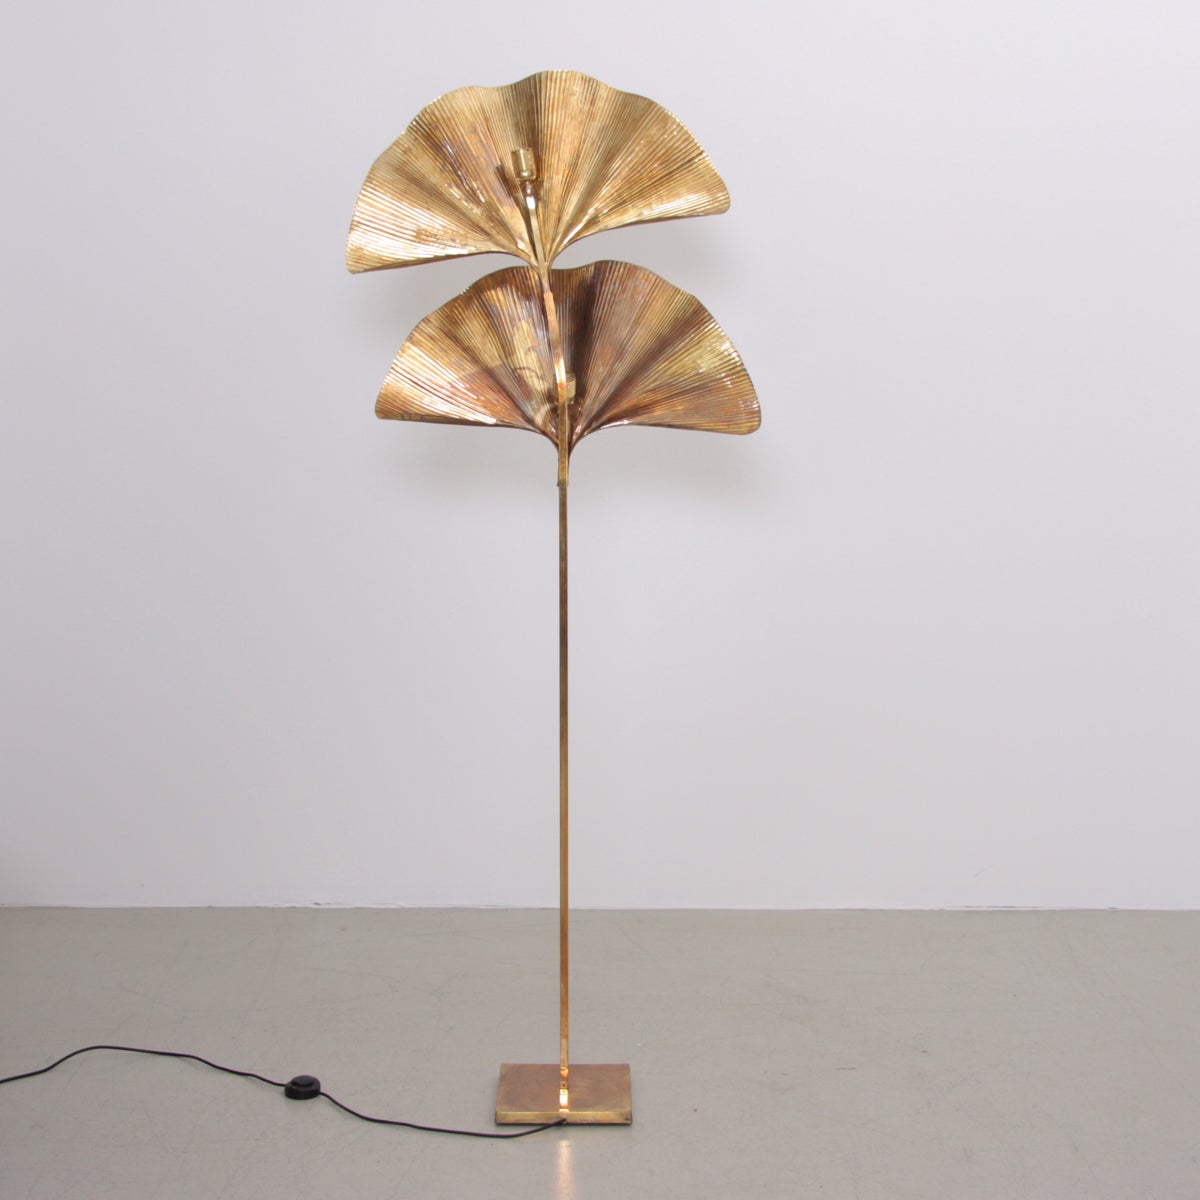 Italian 1 of 2 Huge Ginkgo Leaf Brass Floor Lamp by Tommaso Barbi